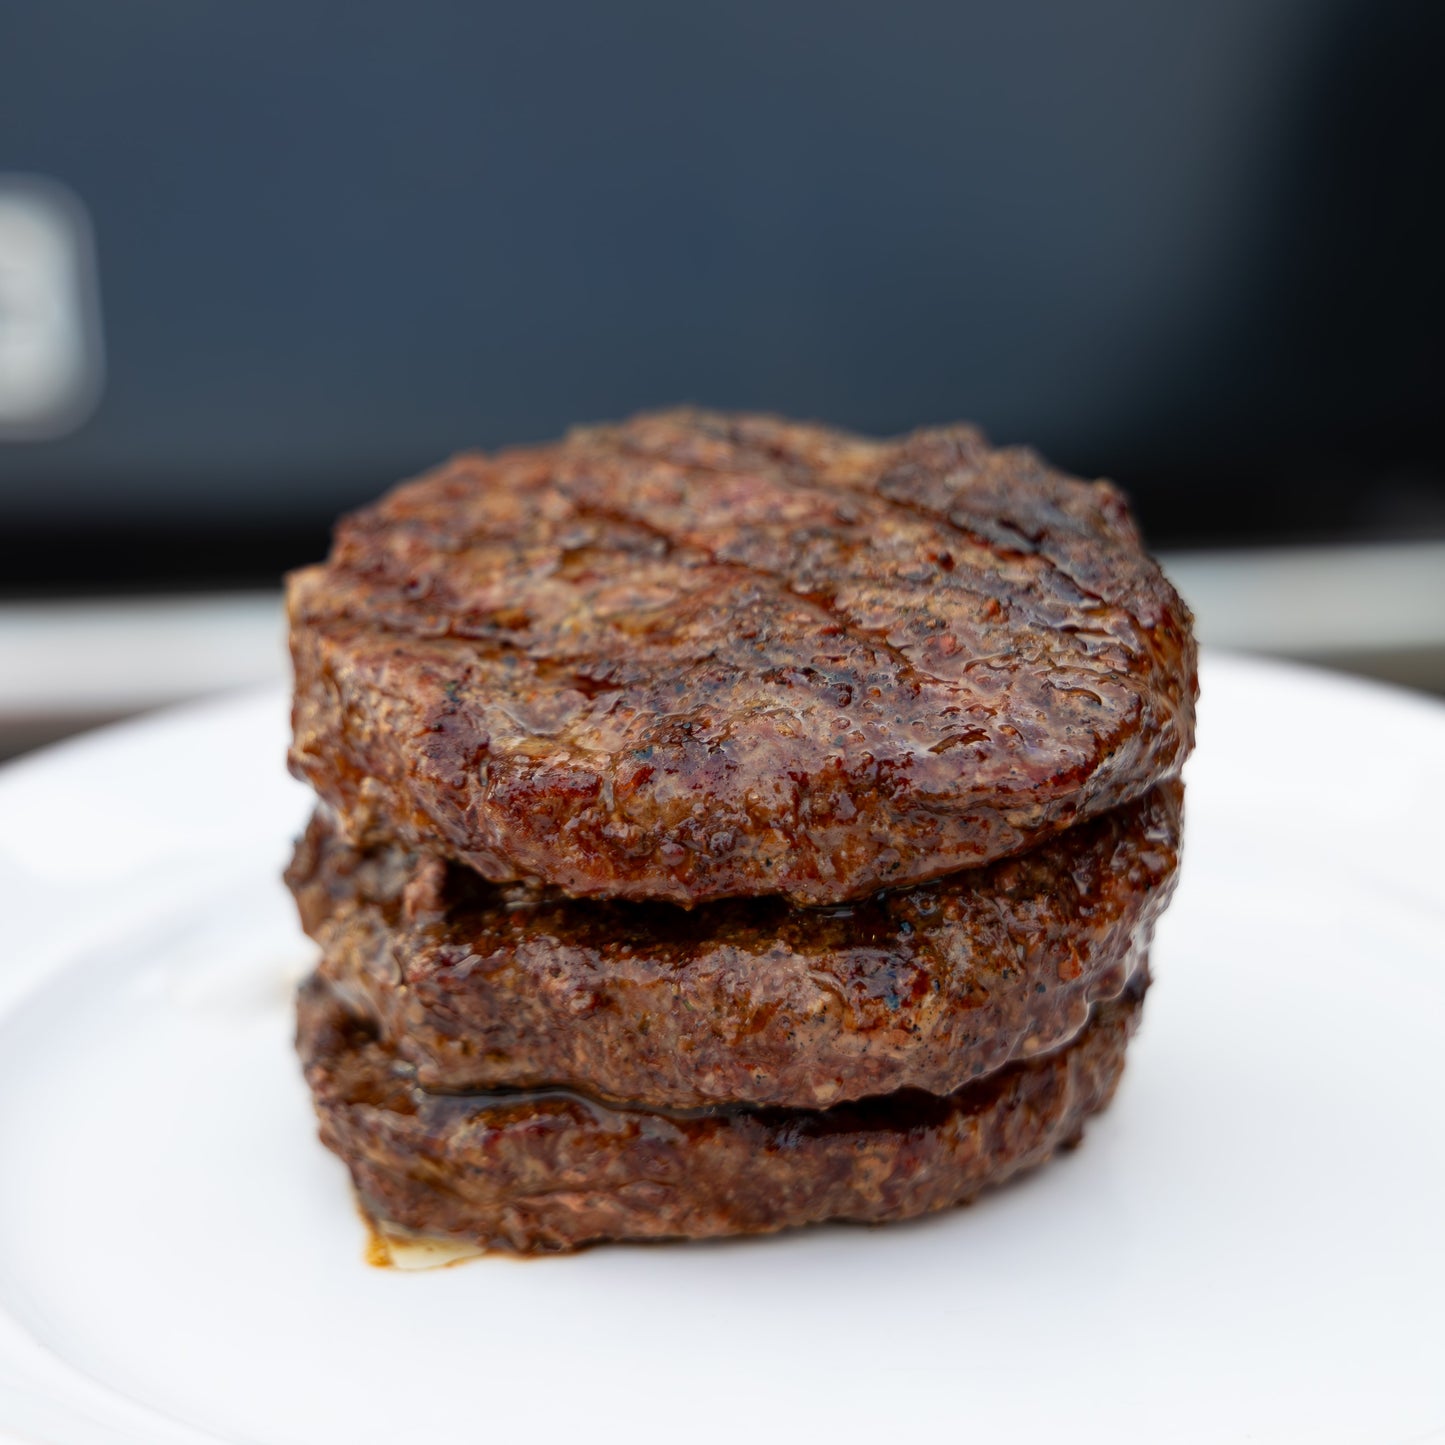 The Steak Burger Box – Didier Ranch